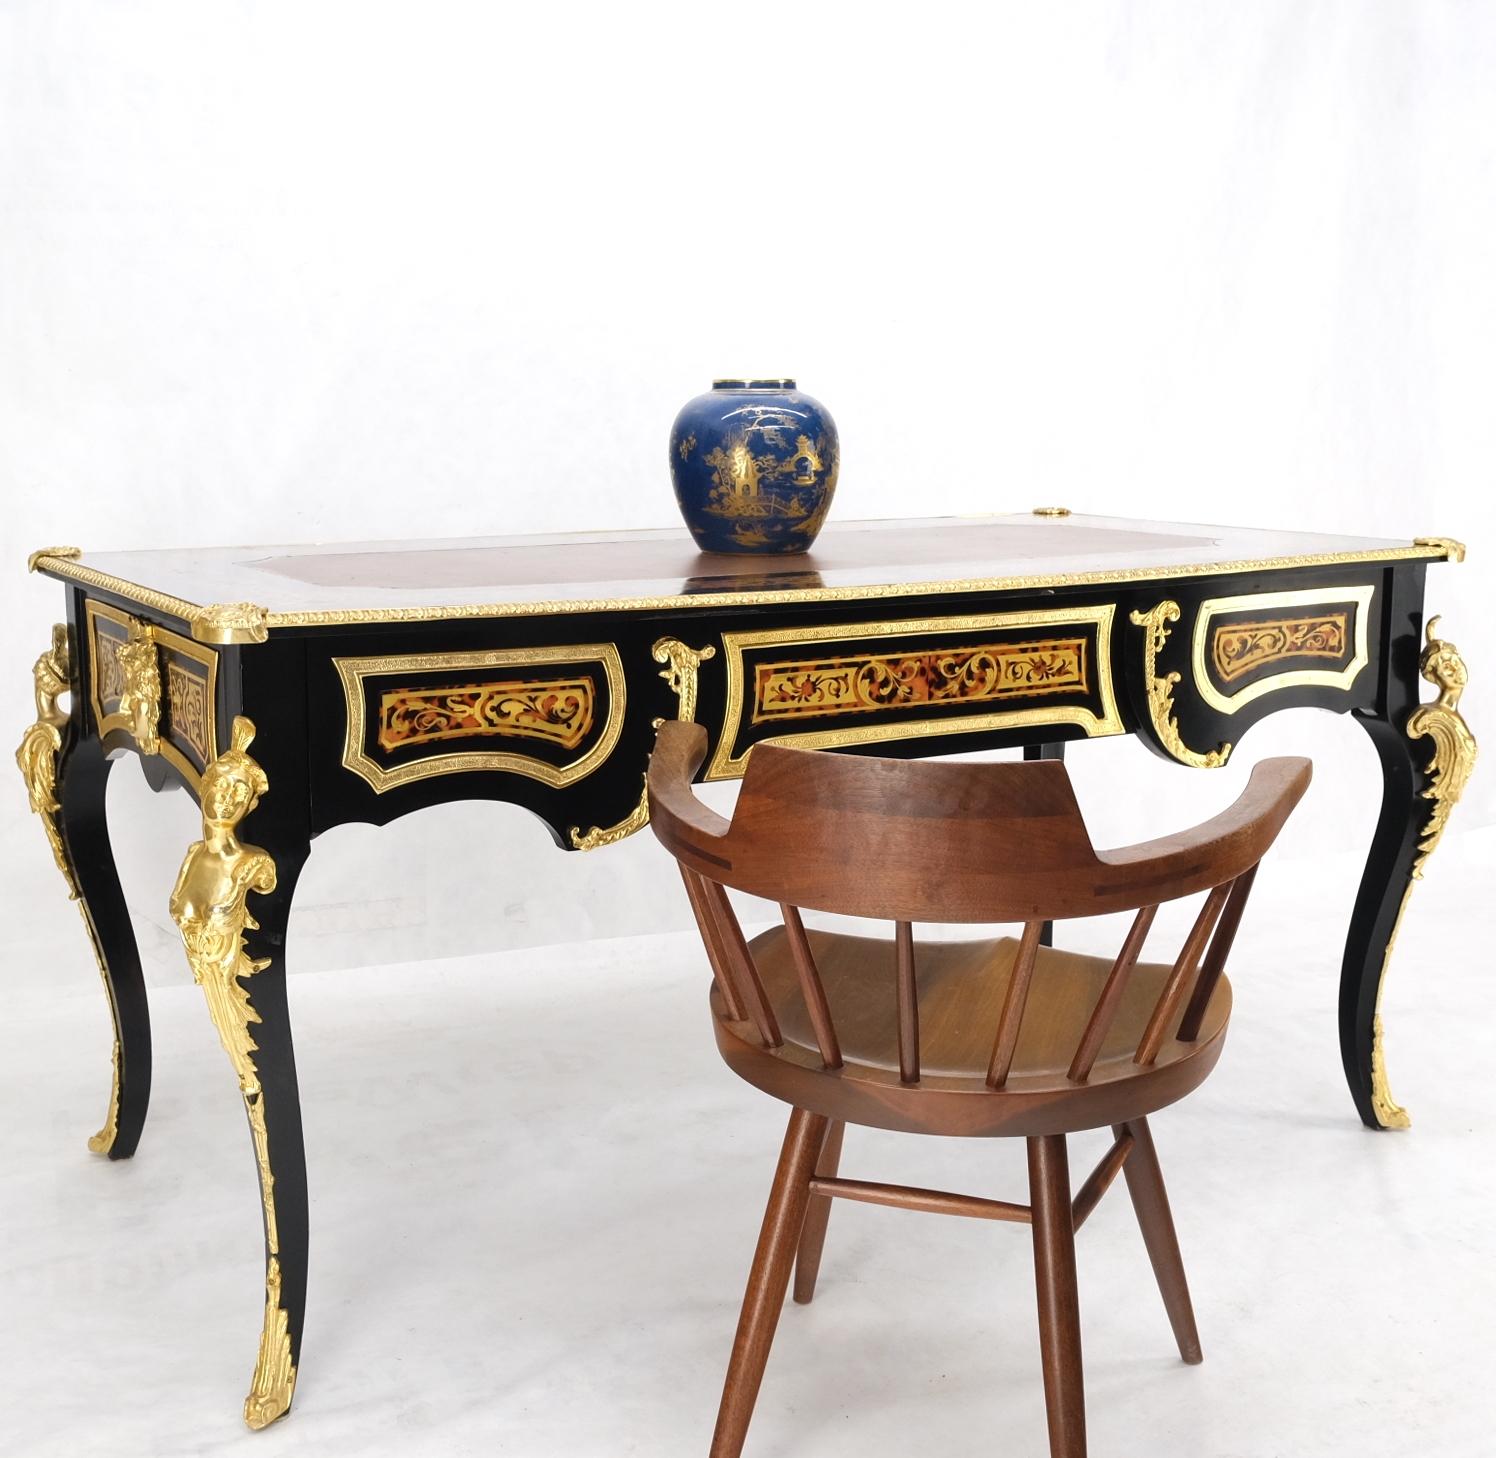 Emaille verziert Französisch Louis Revival Ormolu montiert Bureau plat Partner Schreibtisch Tisch Konsole mint
 Beide Seiten sind symmetrisch, eine Seite lässt sich jedoch öffnen.